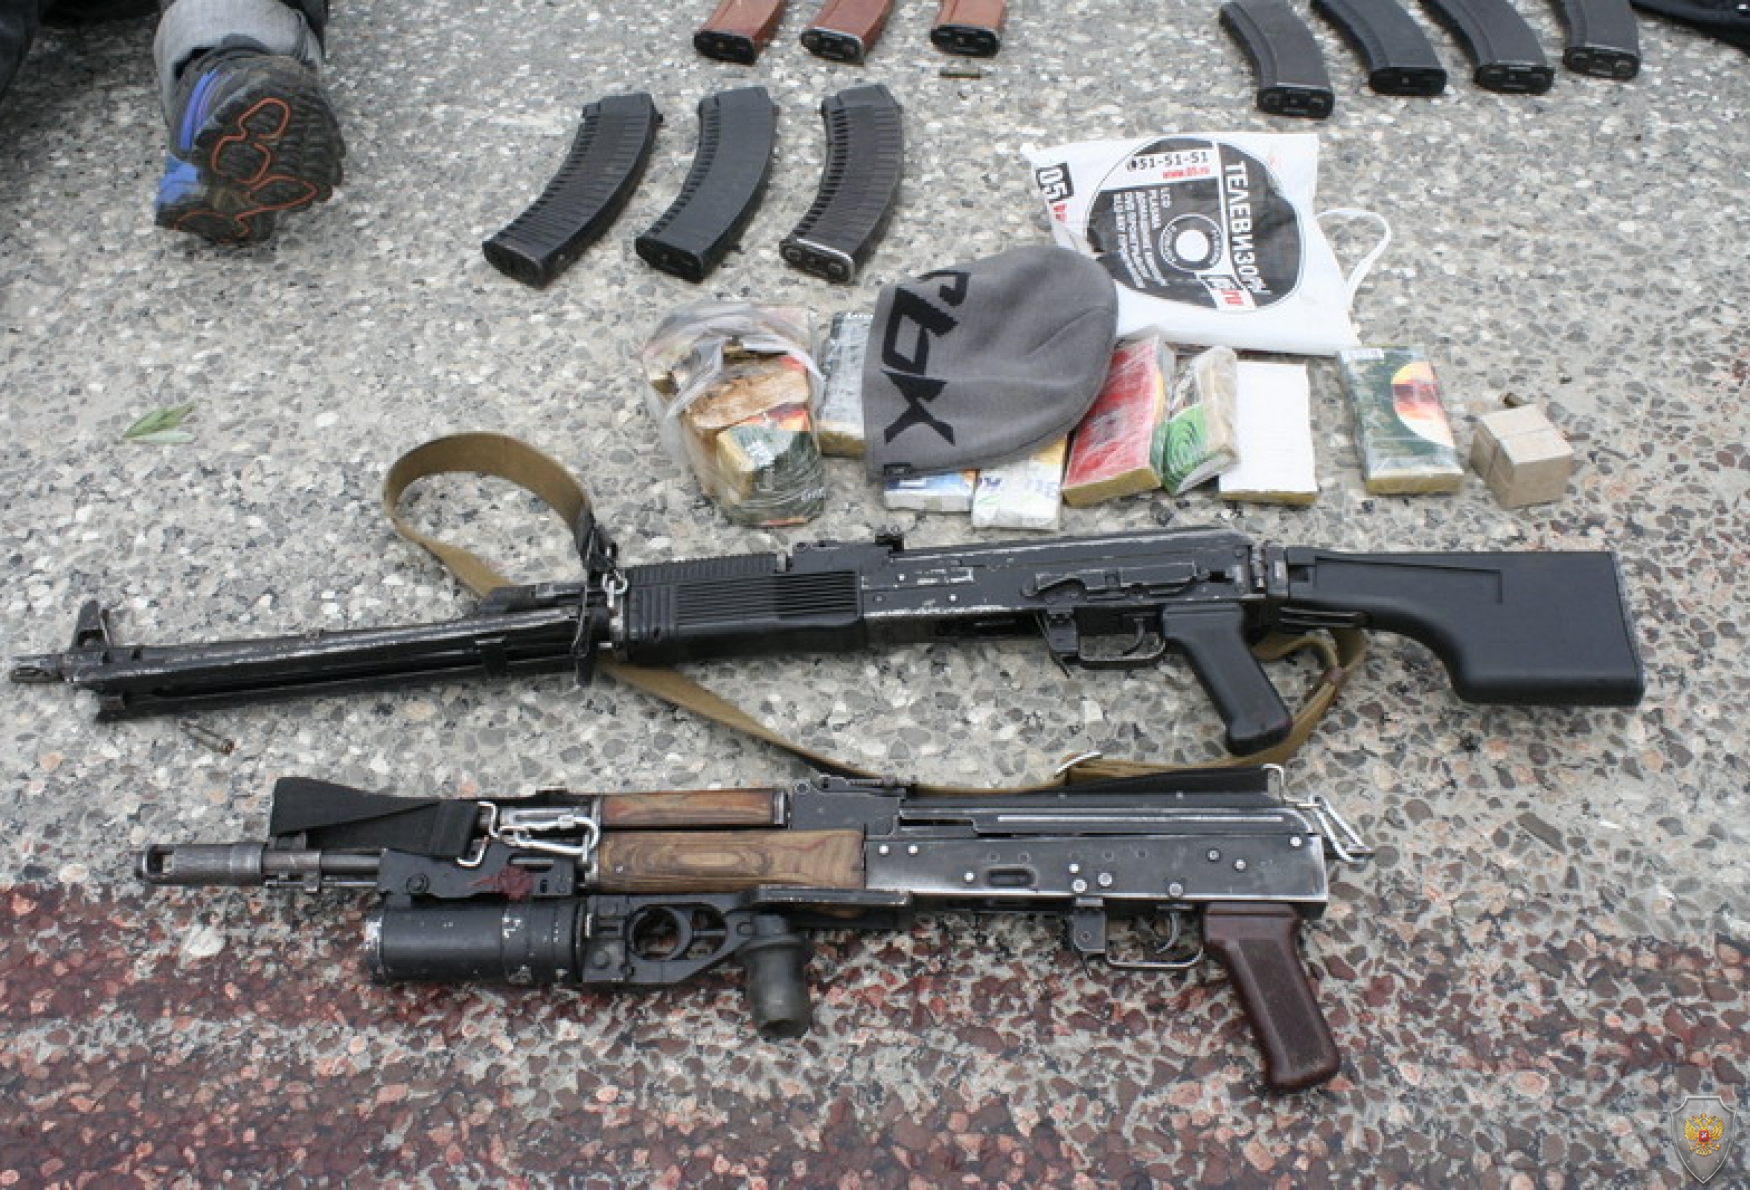 В КБР предотвращена угроза совершения теракта, в Дагестане нейтрализованы пятеро бандитов